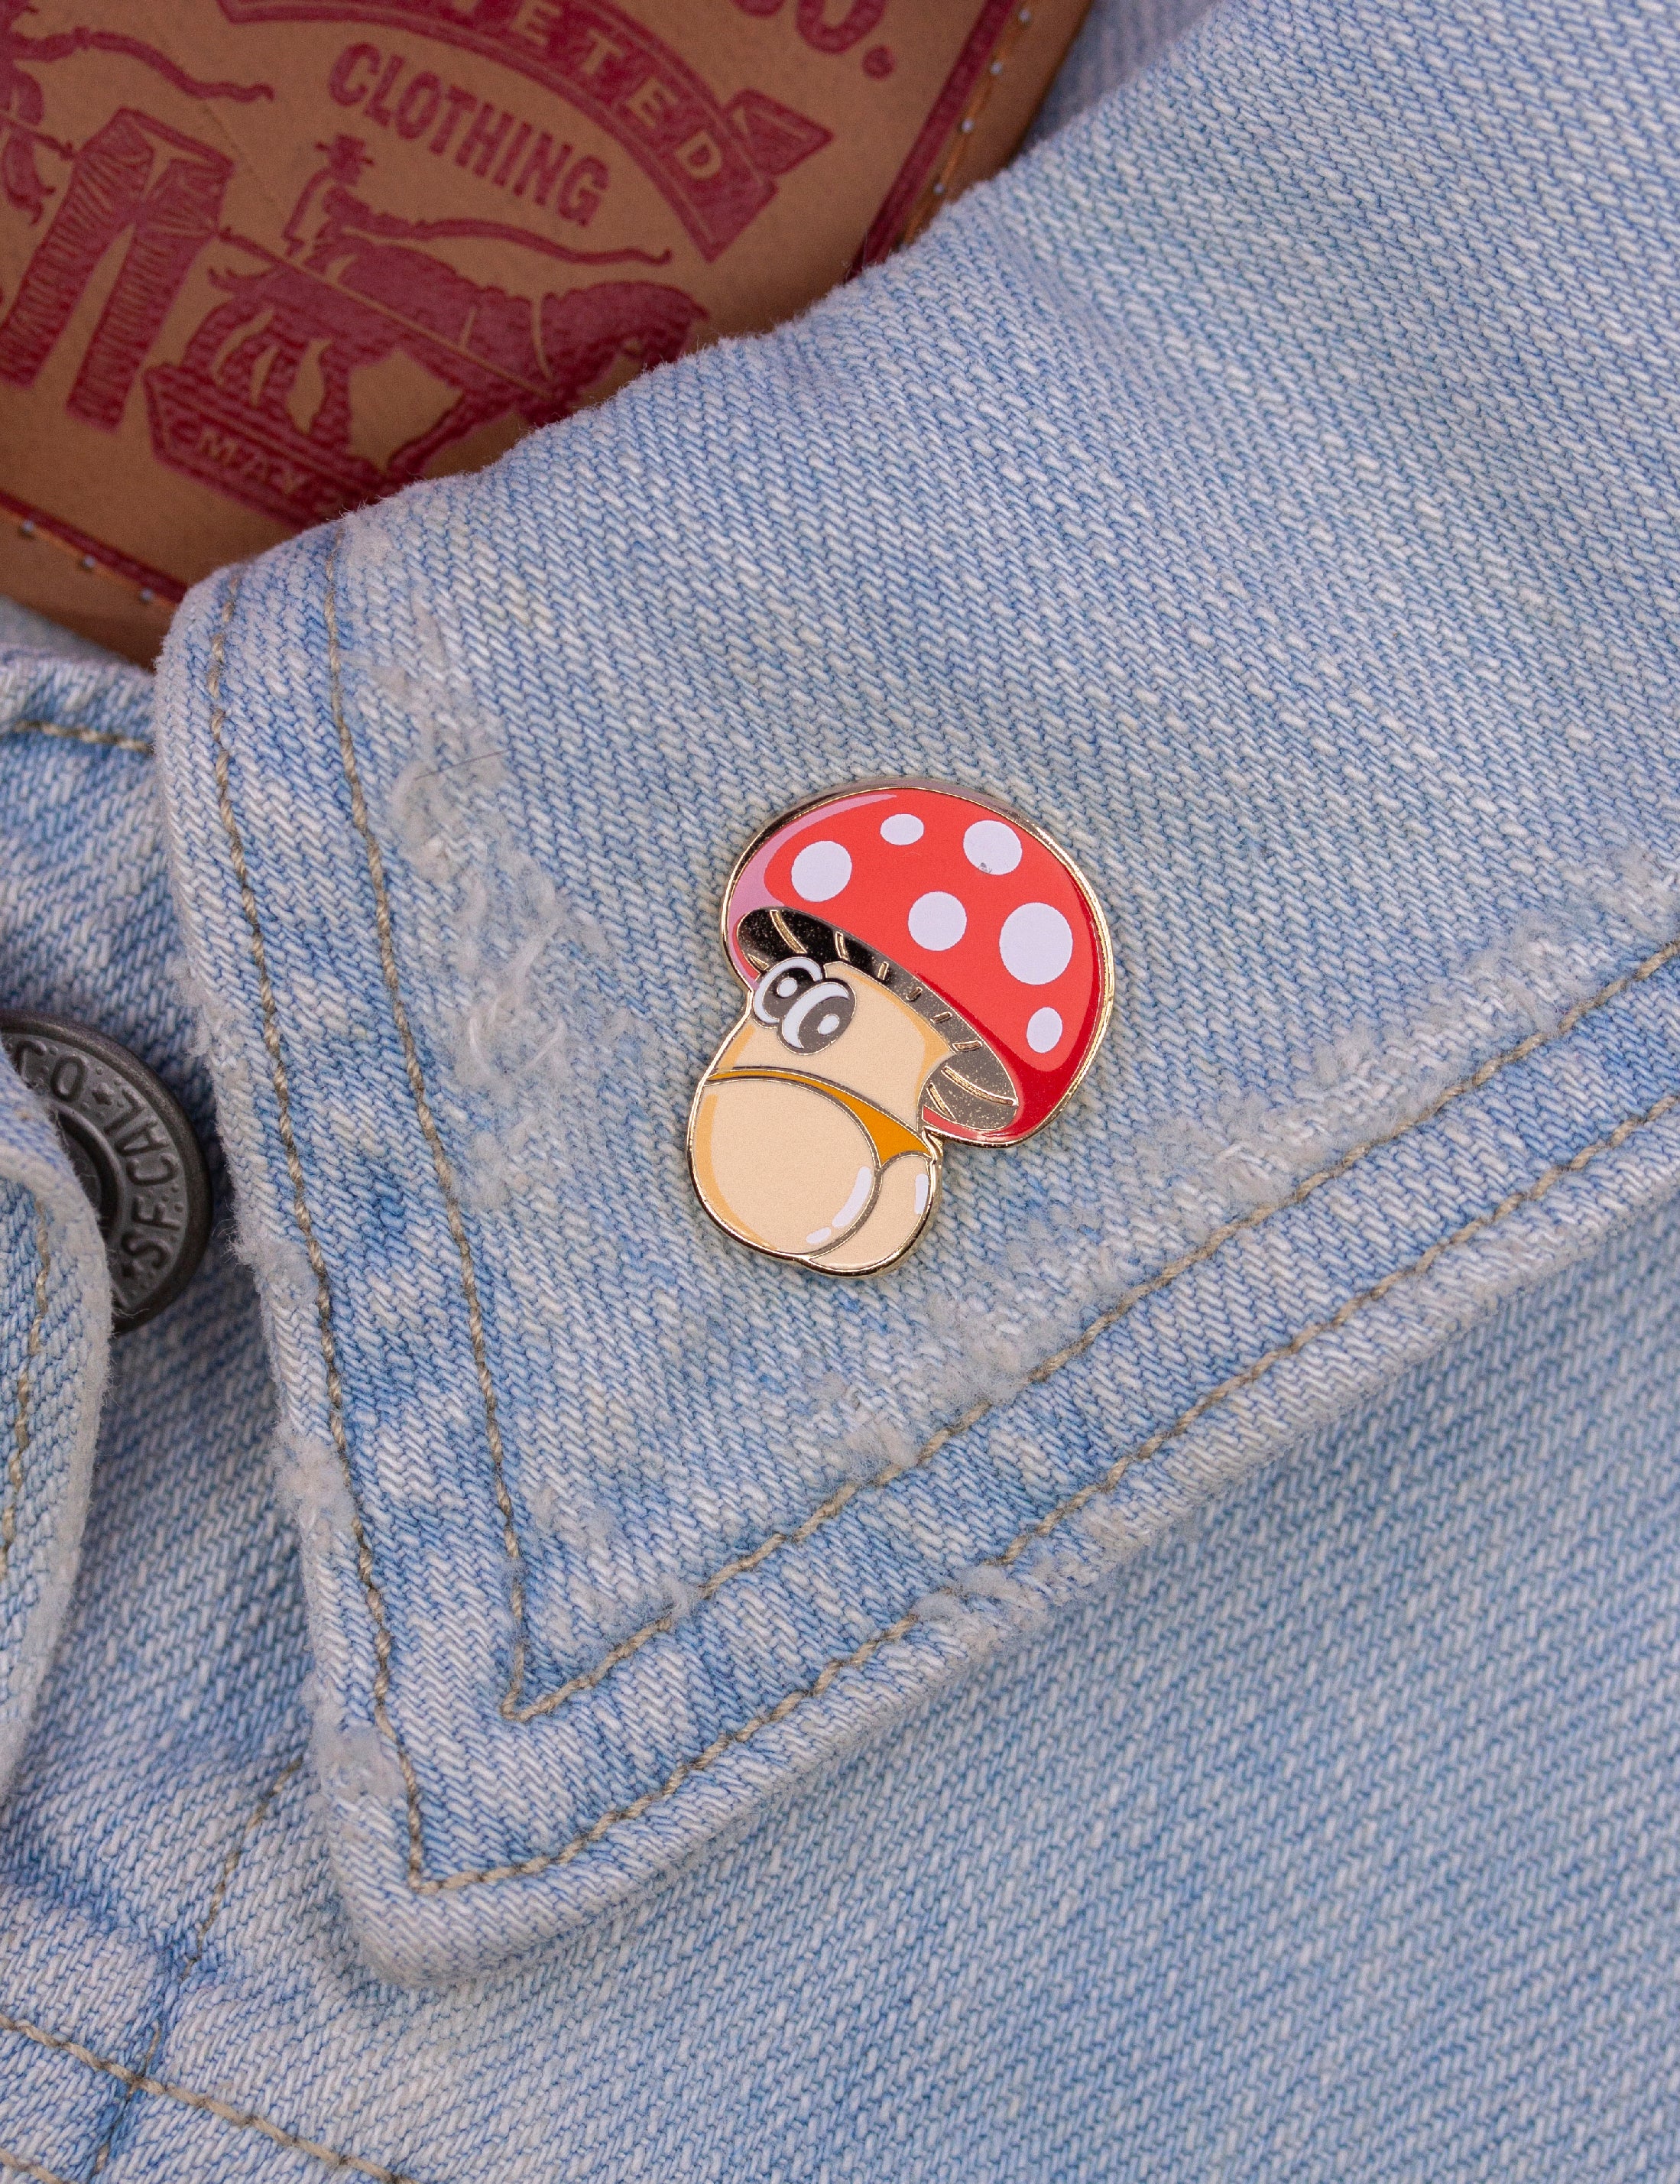 Cheeky shroom enamel pin